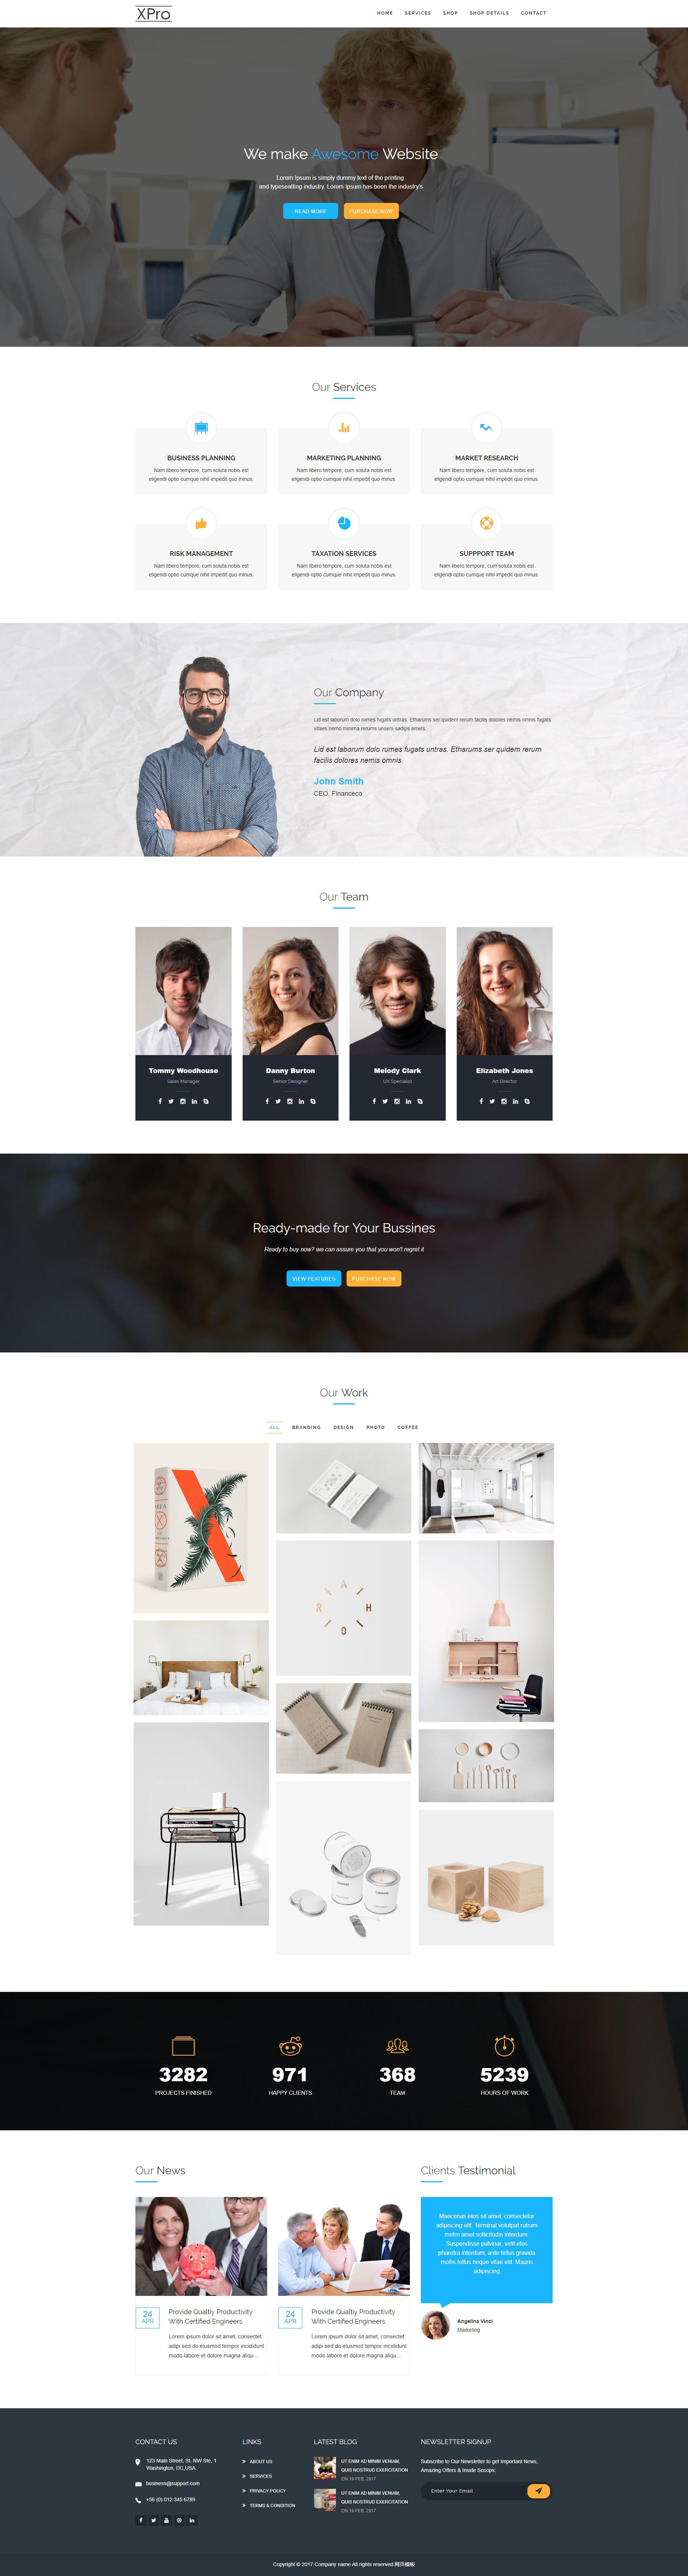 白色简洁的产品创意设计公司网站html模板